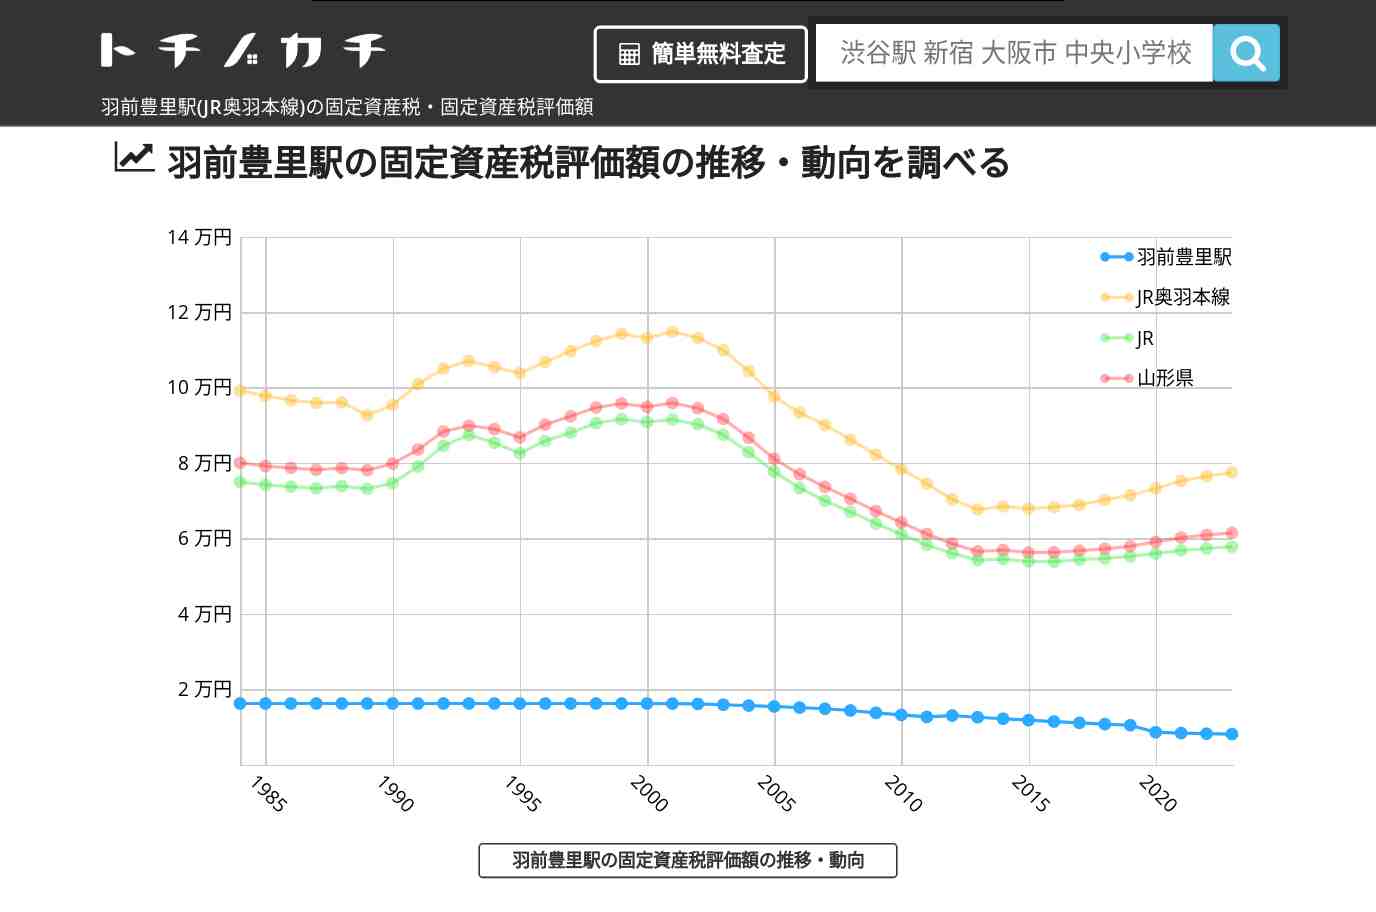 羽前豊里駅(JR奥羽本線)の固定資産税・固定資産税評価額 | トチノカチ